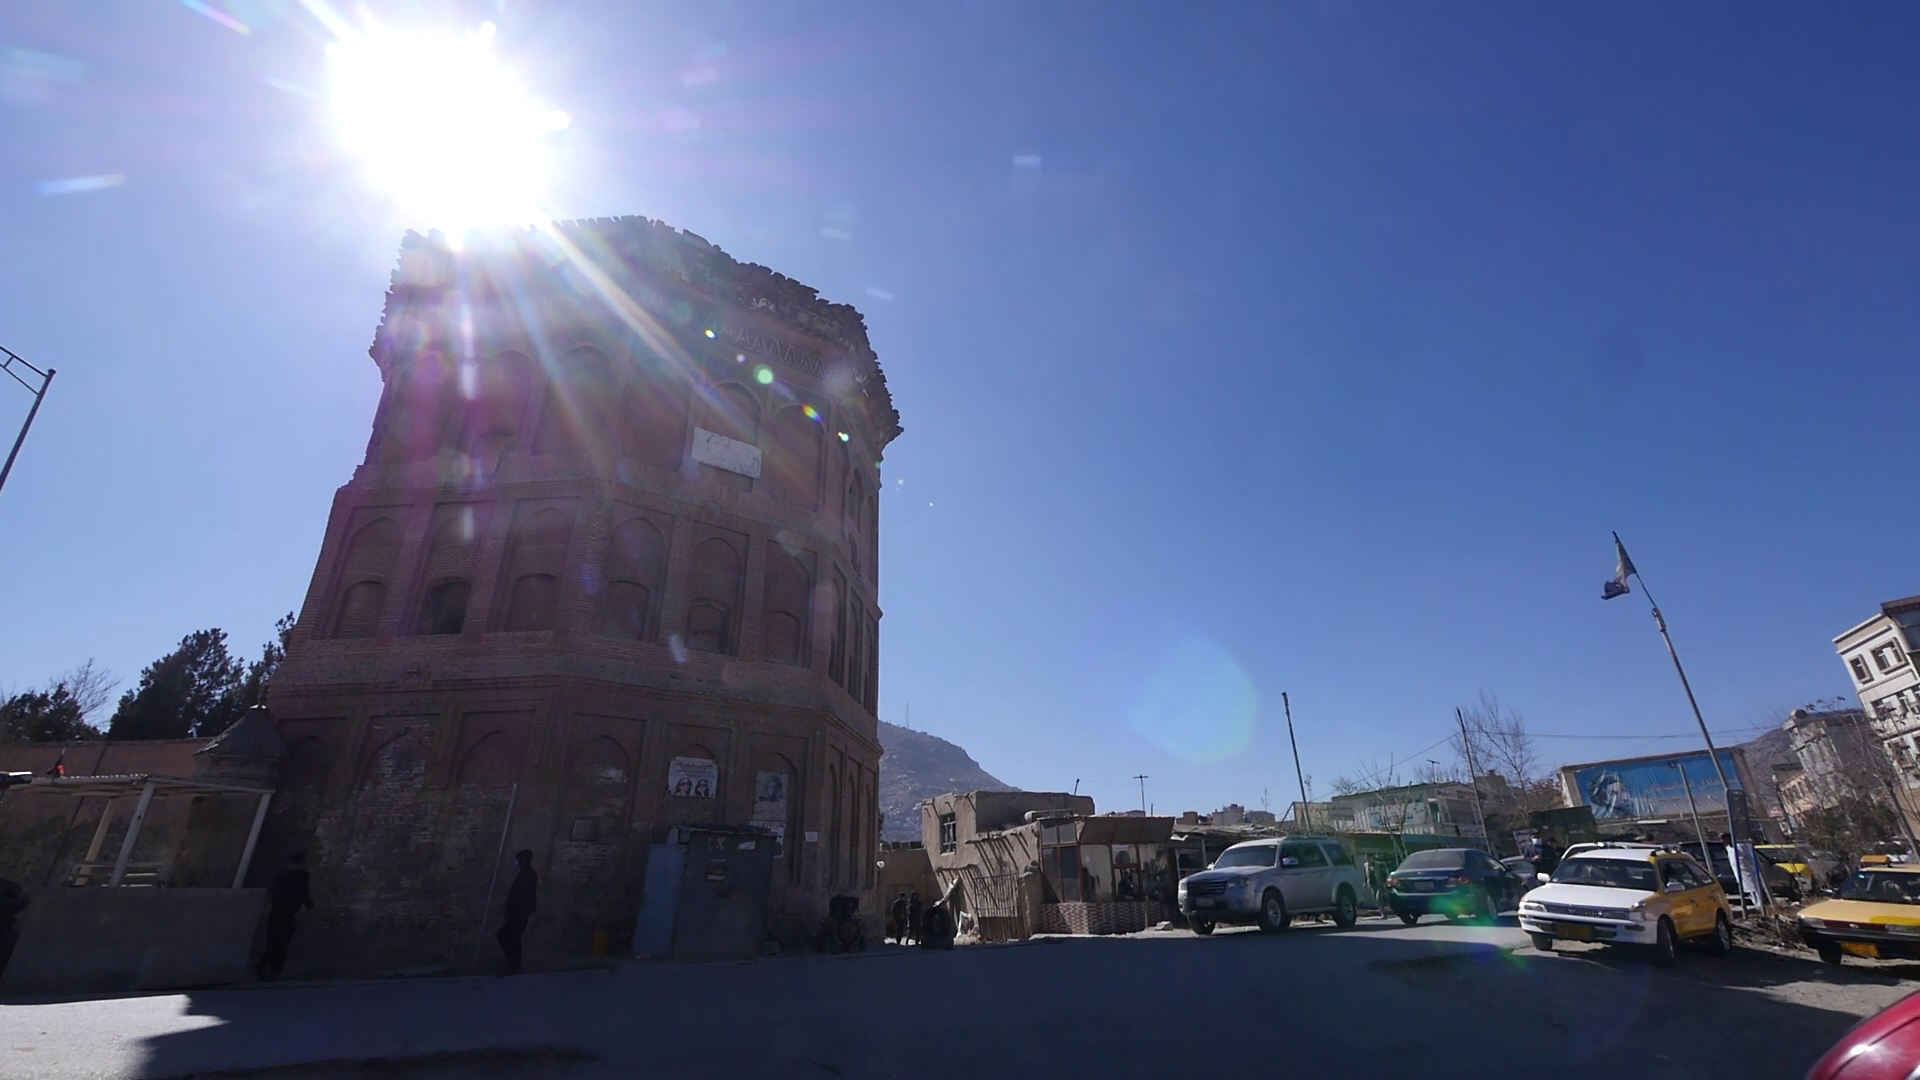 کوچه تنور سازی در شهرآرای کابل نمای از یک برج تاریخی را نیز به همراه دارد که ظاهرا در گذشته در این محل قلعه نظامی با هفت برج بوده است.